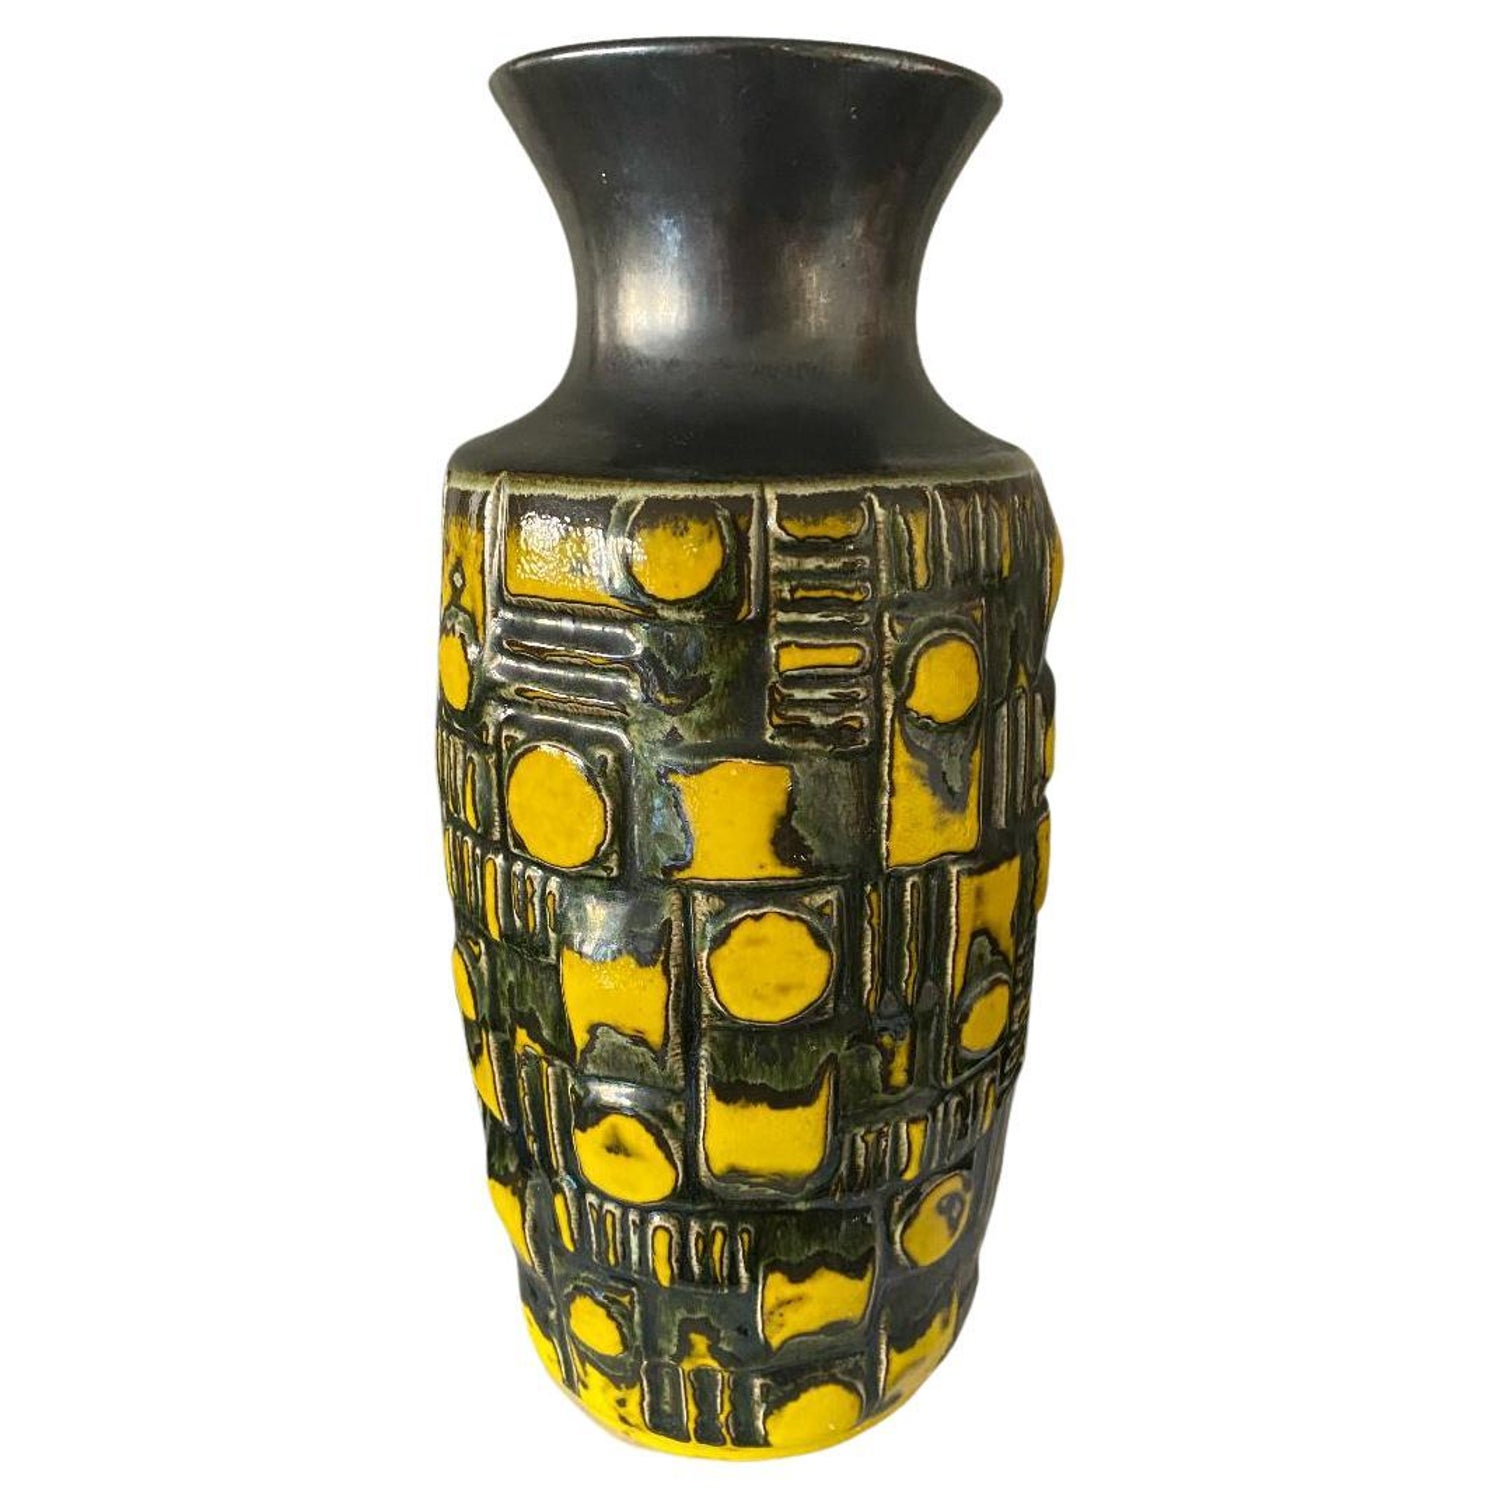 Ü-Keramik Vases - 4 For Sale at 1stDibs